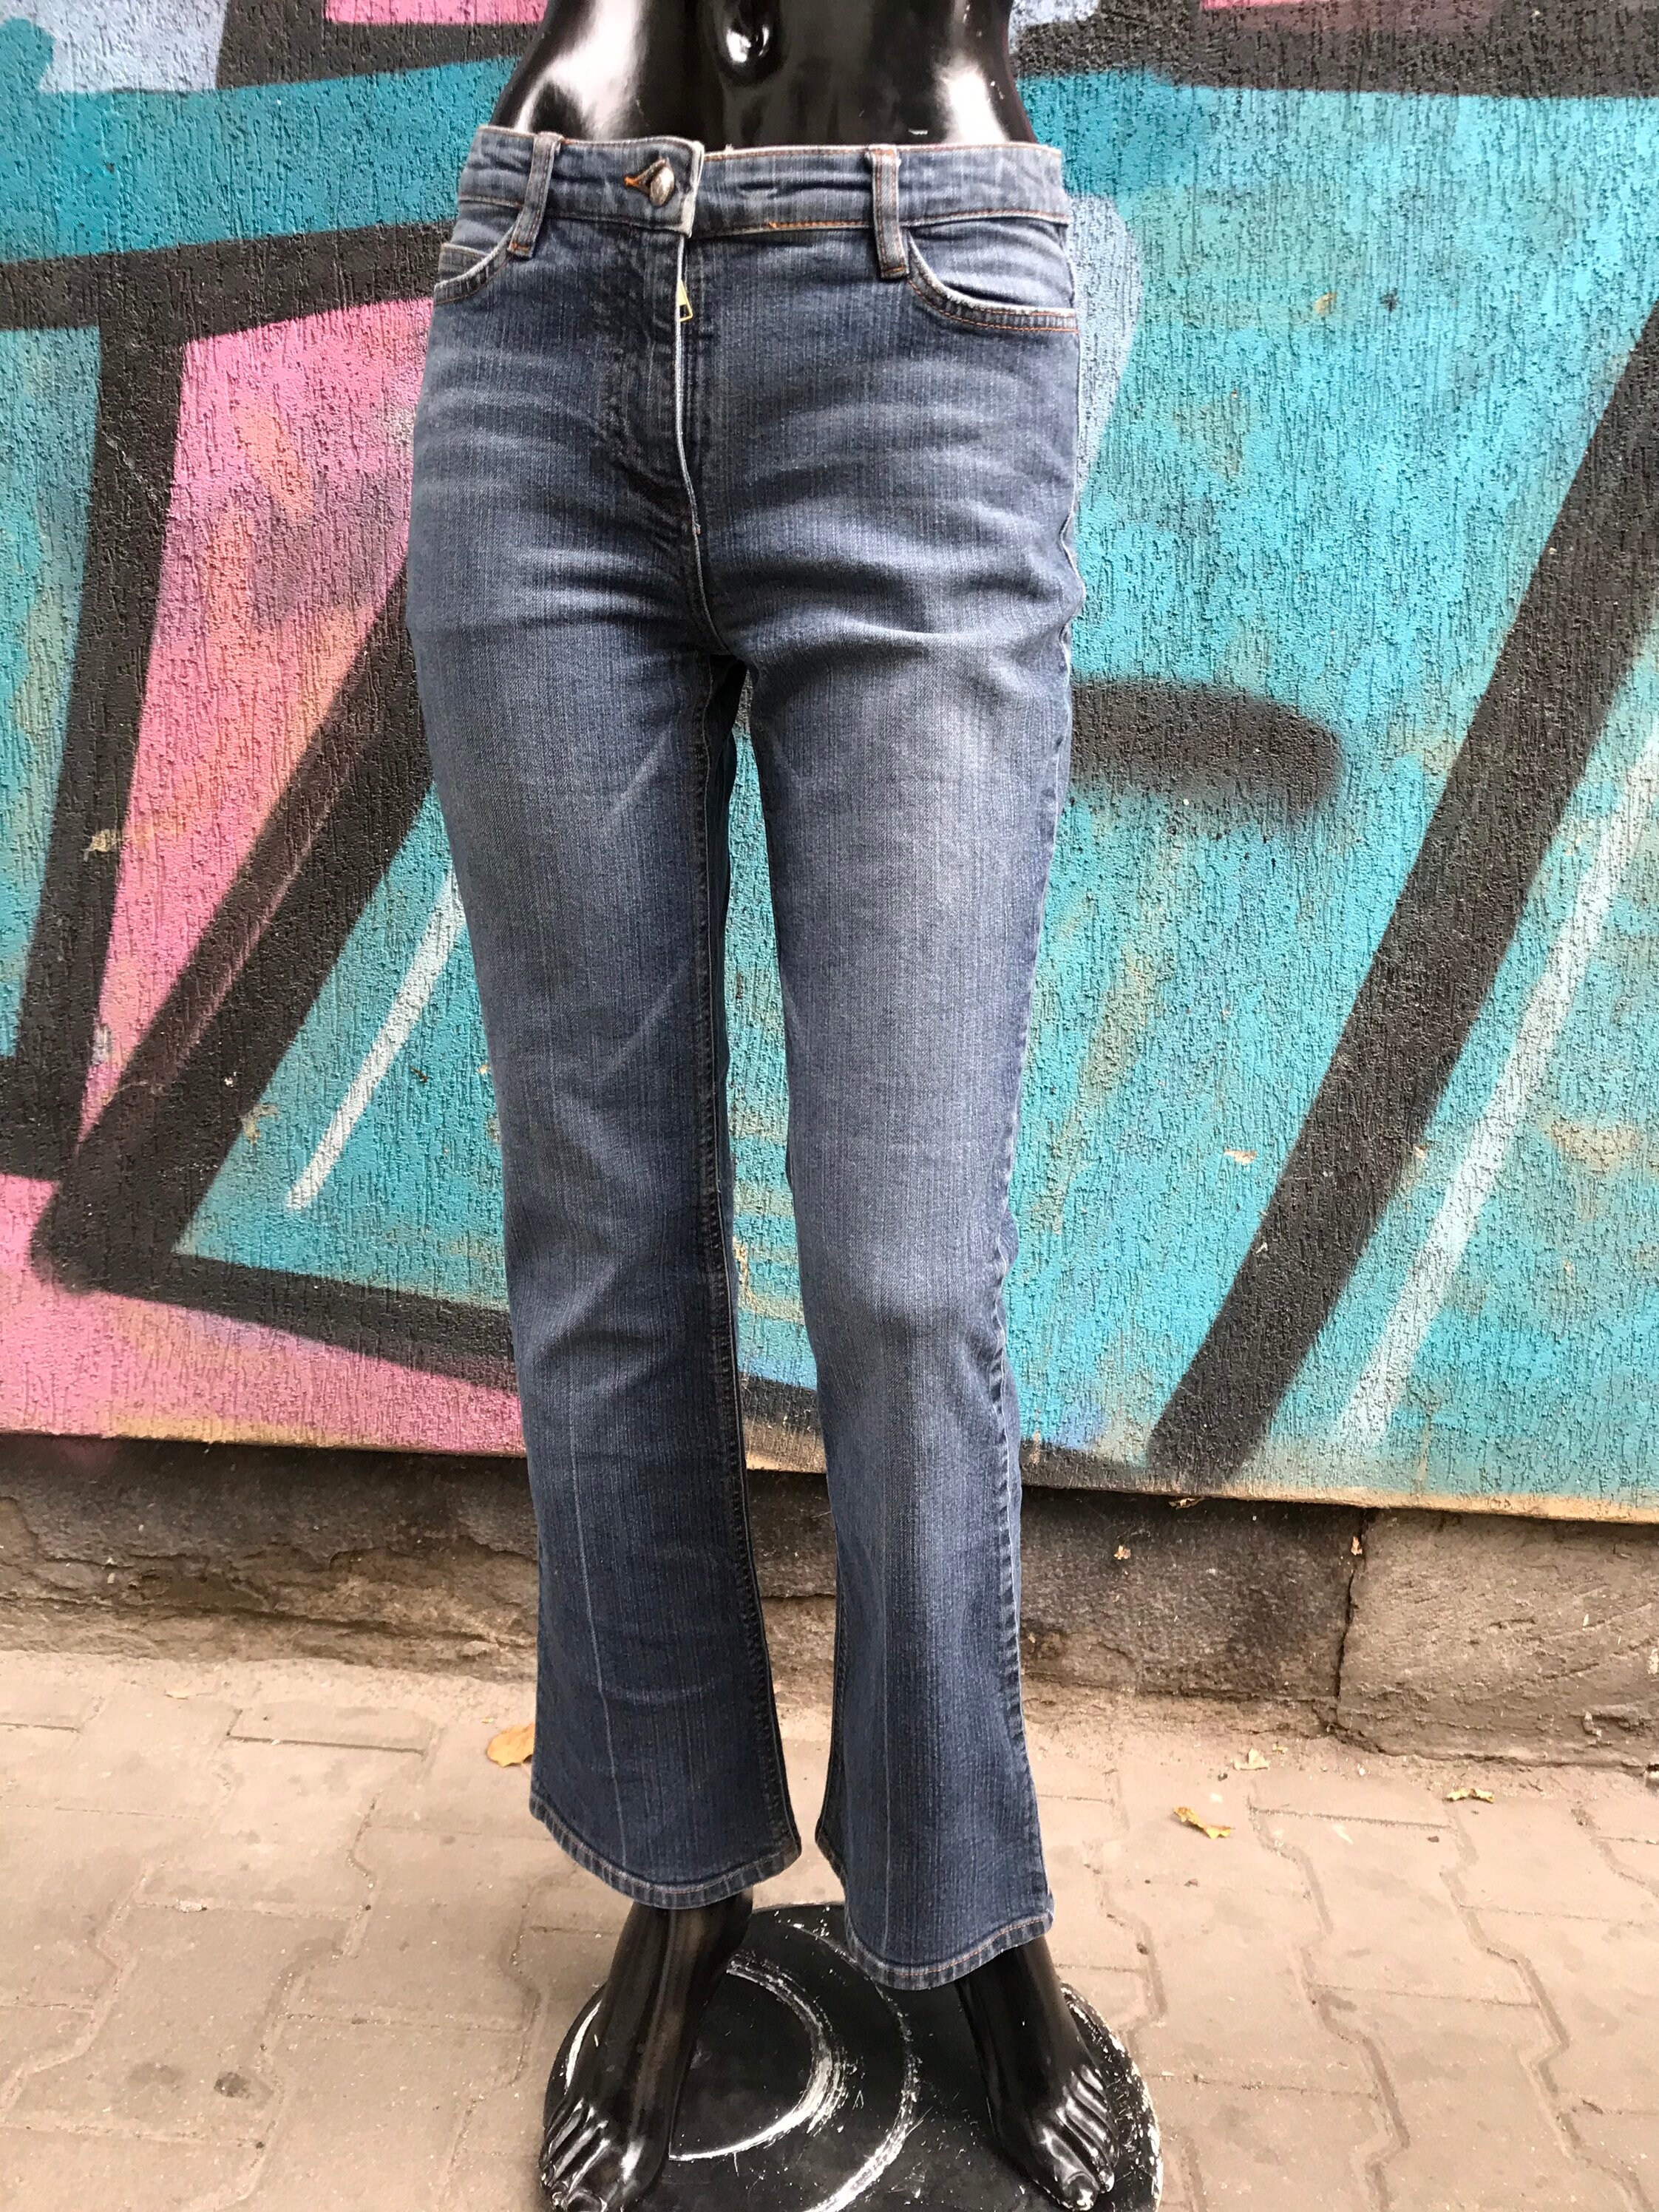 Verbetering Leraar op school dichtheid Joop Vintage Jeans Joop by Armani S Size - Etsy Sweden